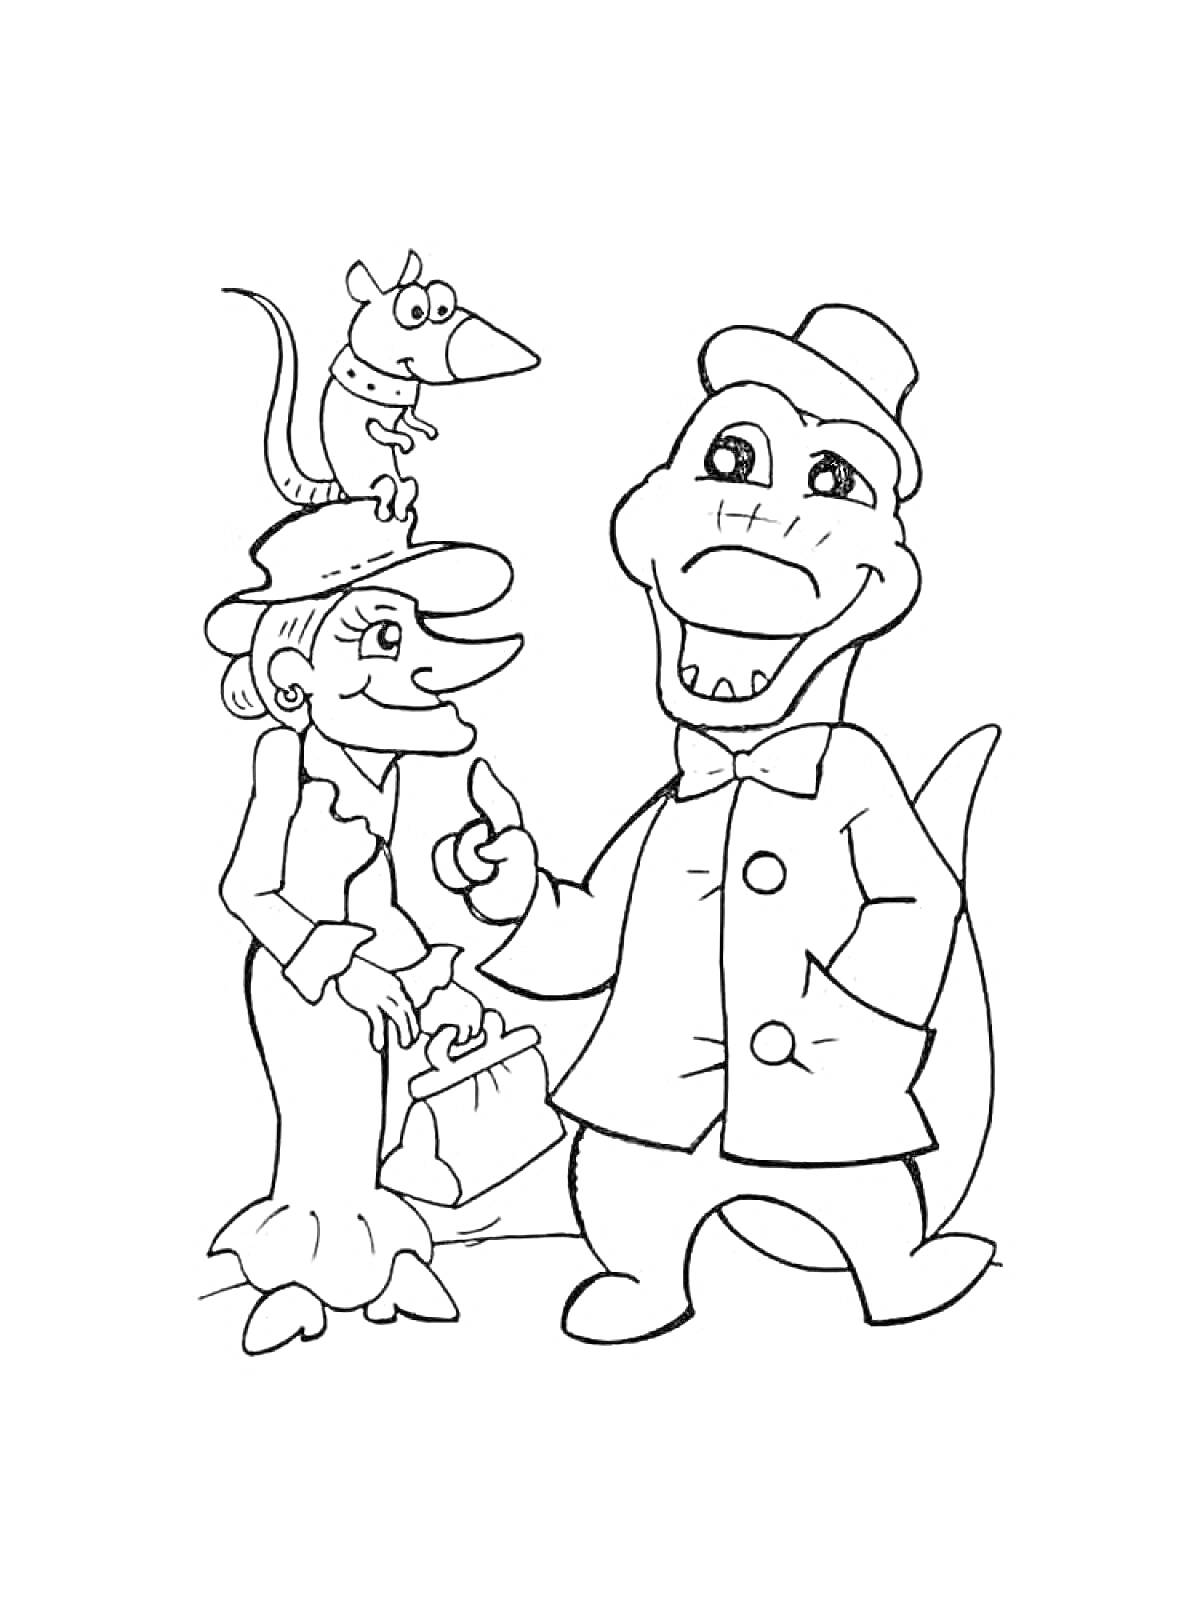 Раскраска Шапокляк с крокодилом Гена и крысой Лариской